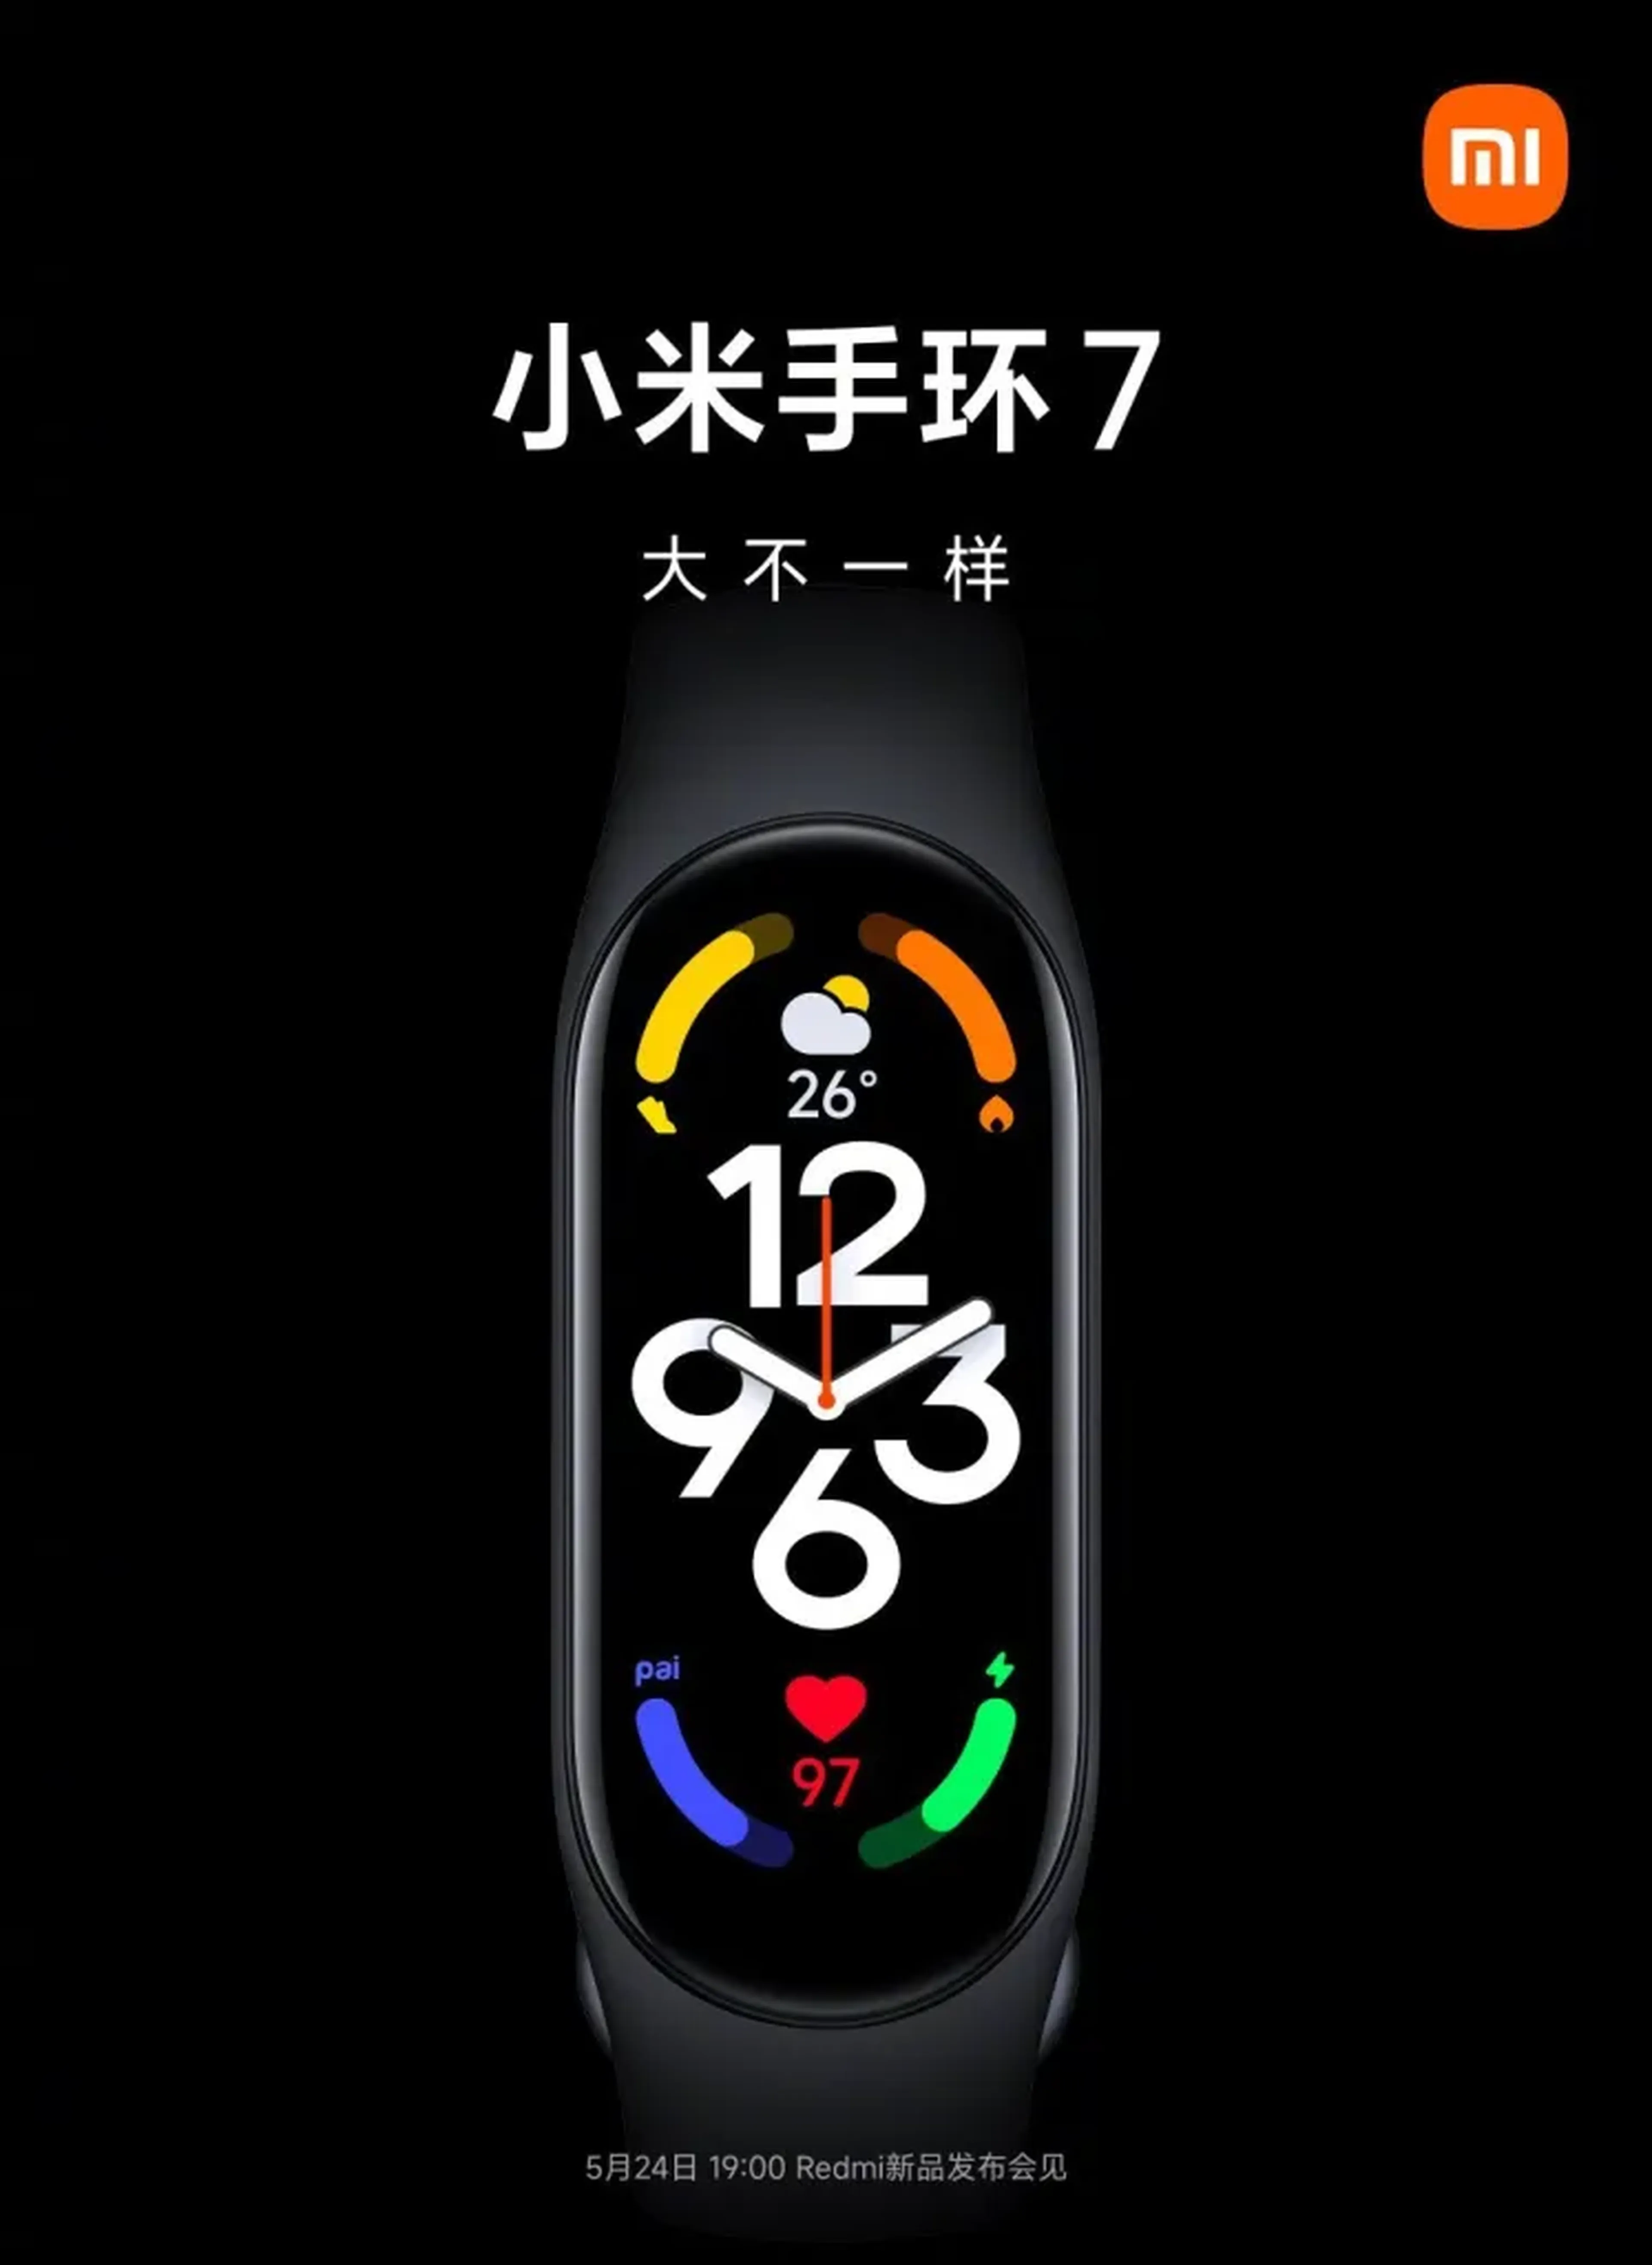 Primer vistazo a la Xiaomi Mi Band 7: pantalla AMOLED y batería de 250 mAh